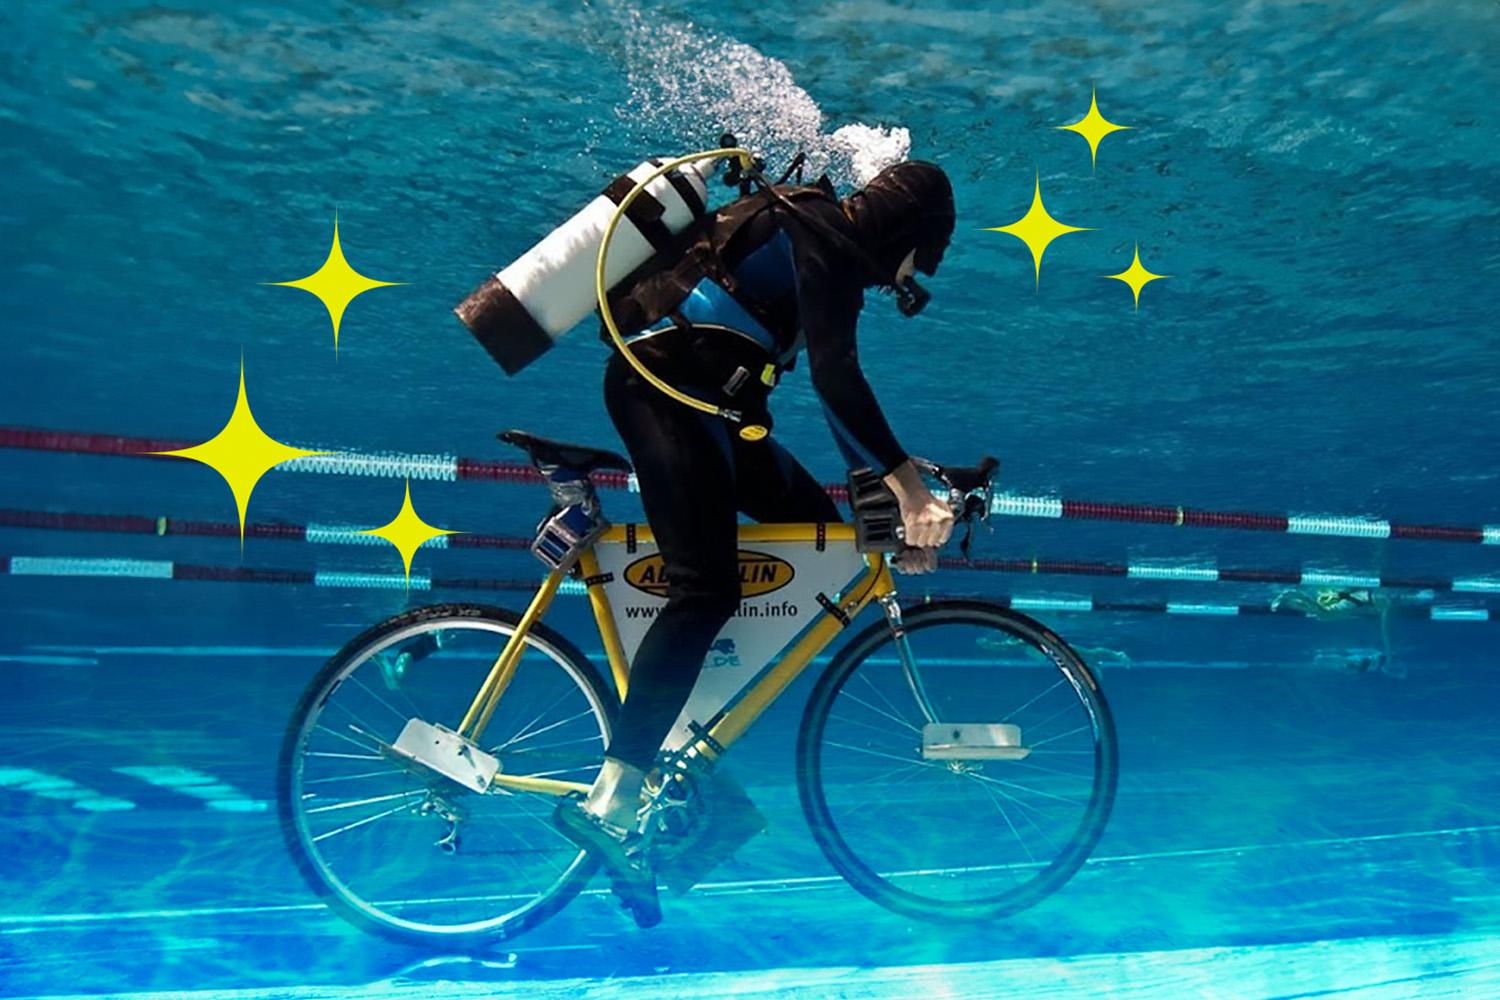 Underwater-Cycling-Sport-SPACEBAR-Hero.jpg